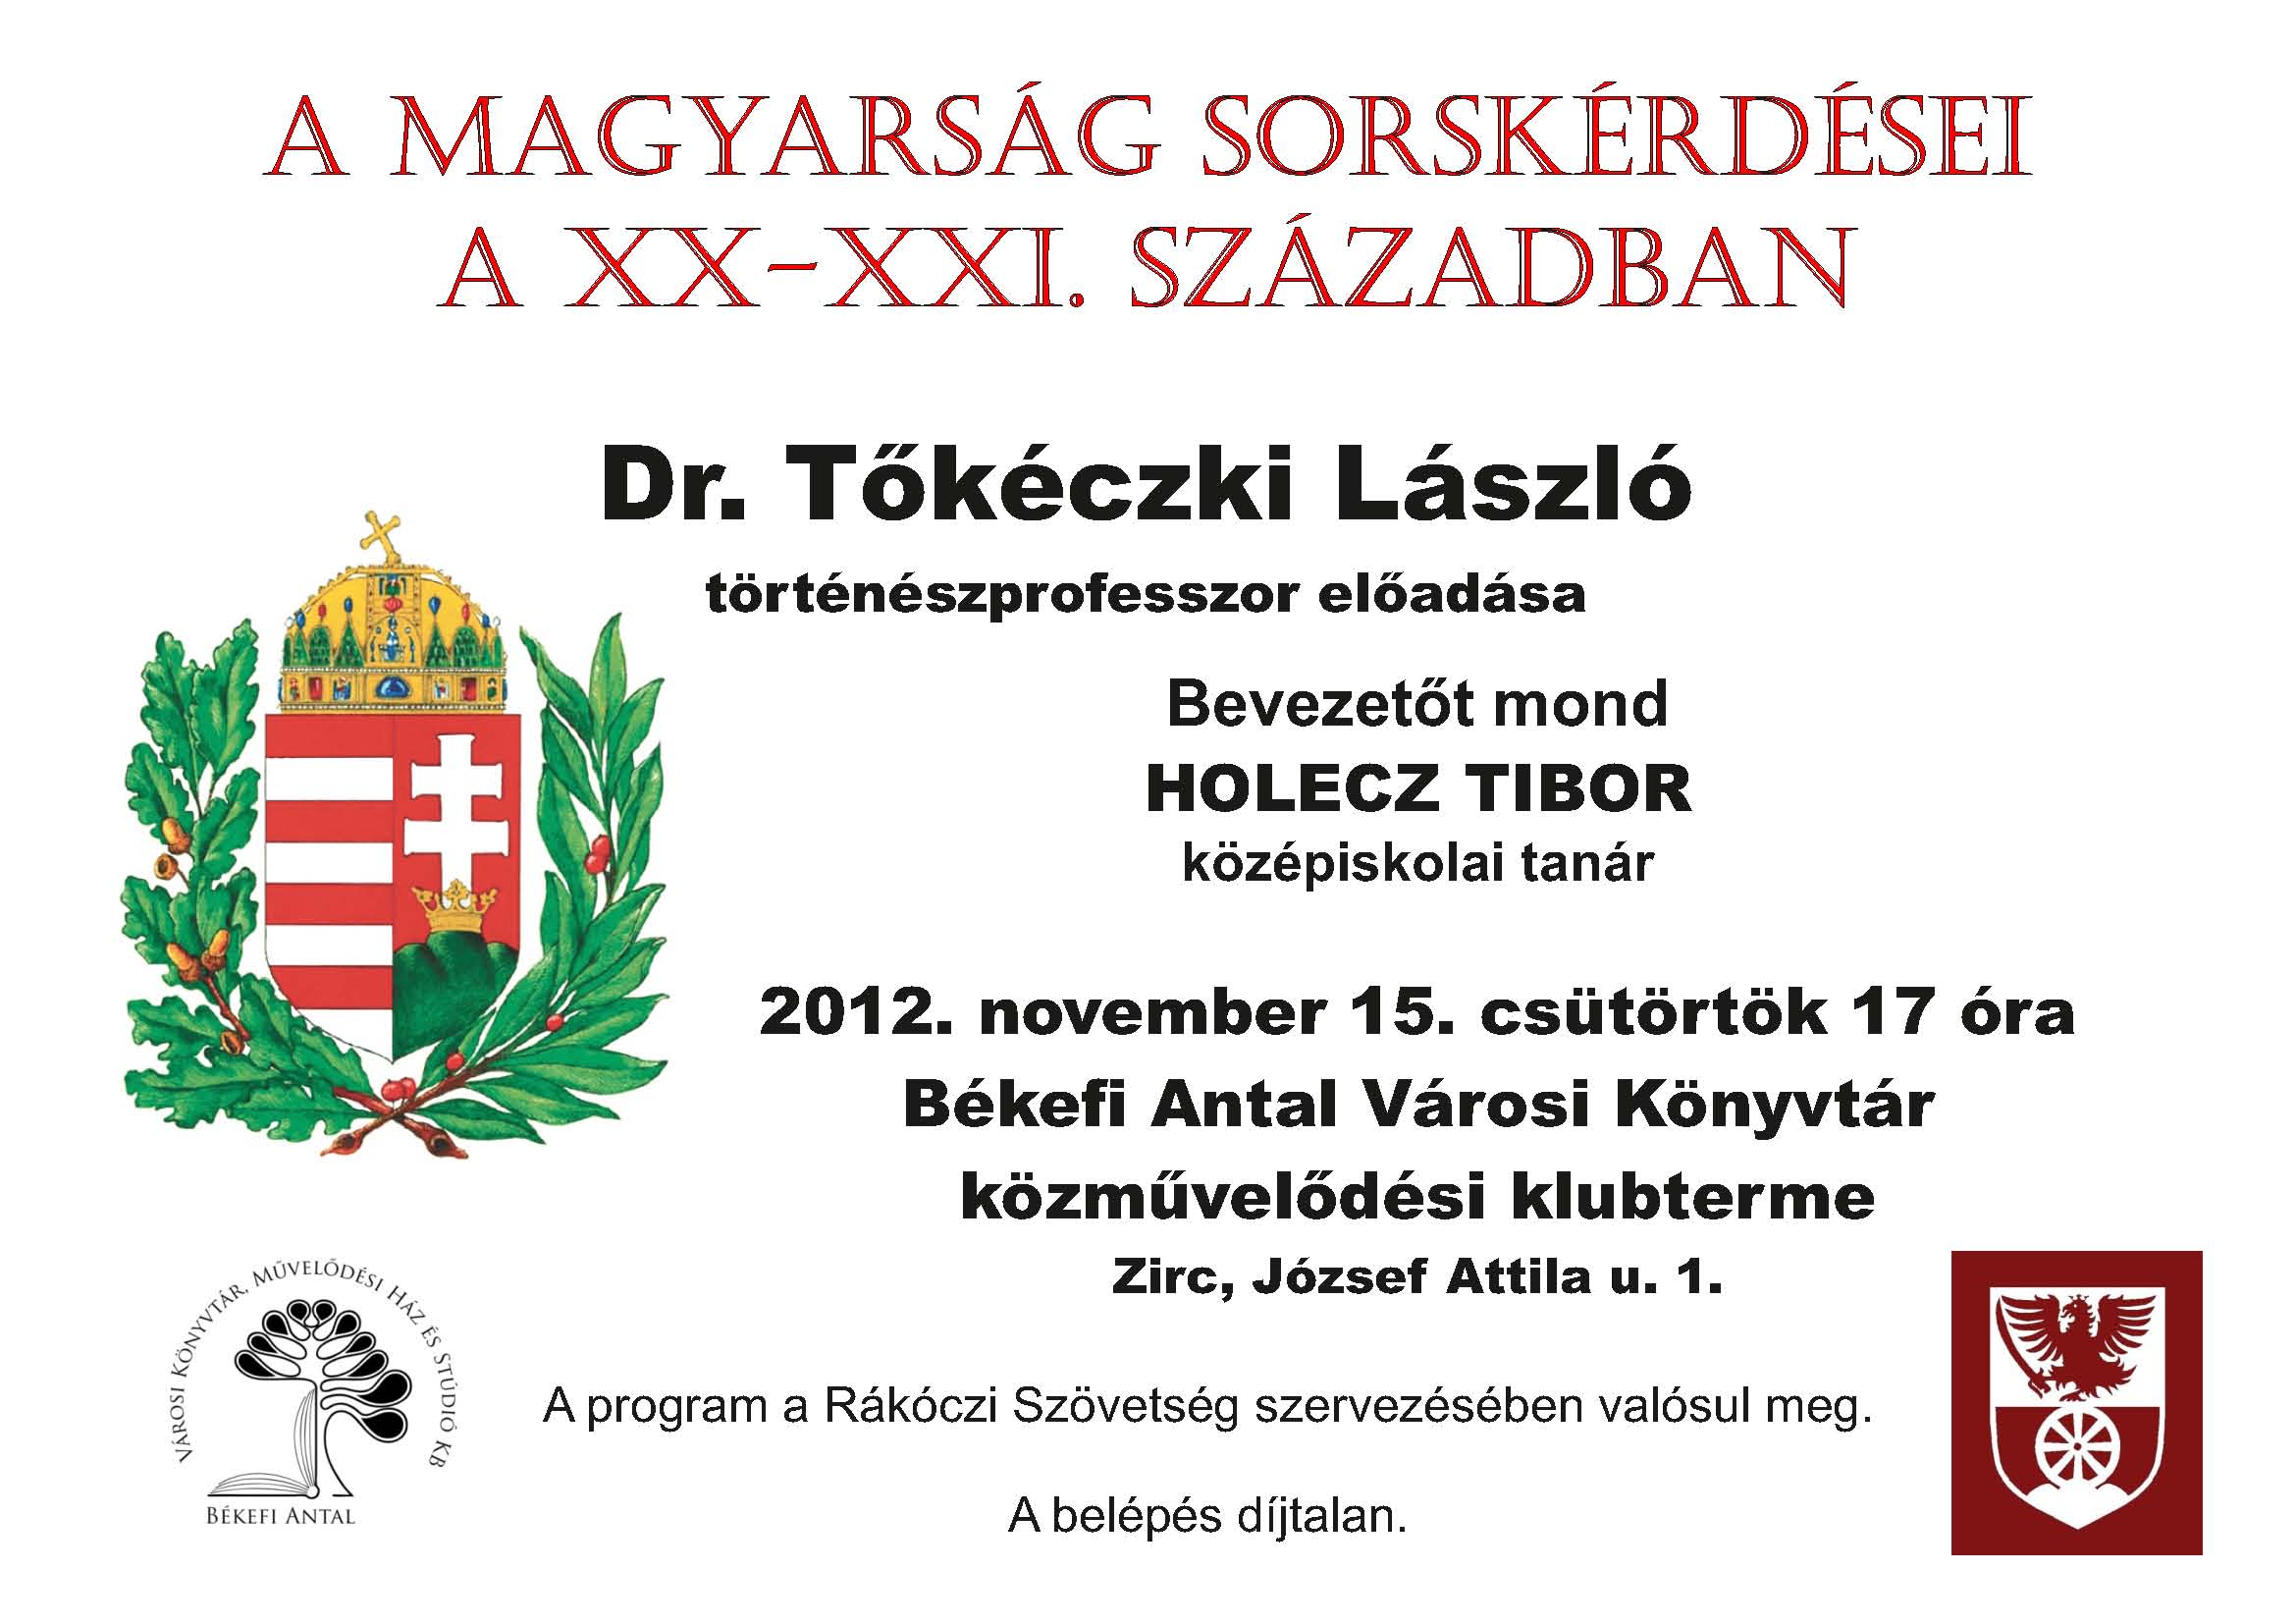 Tőkéczki László plakát.jpg